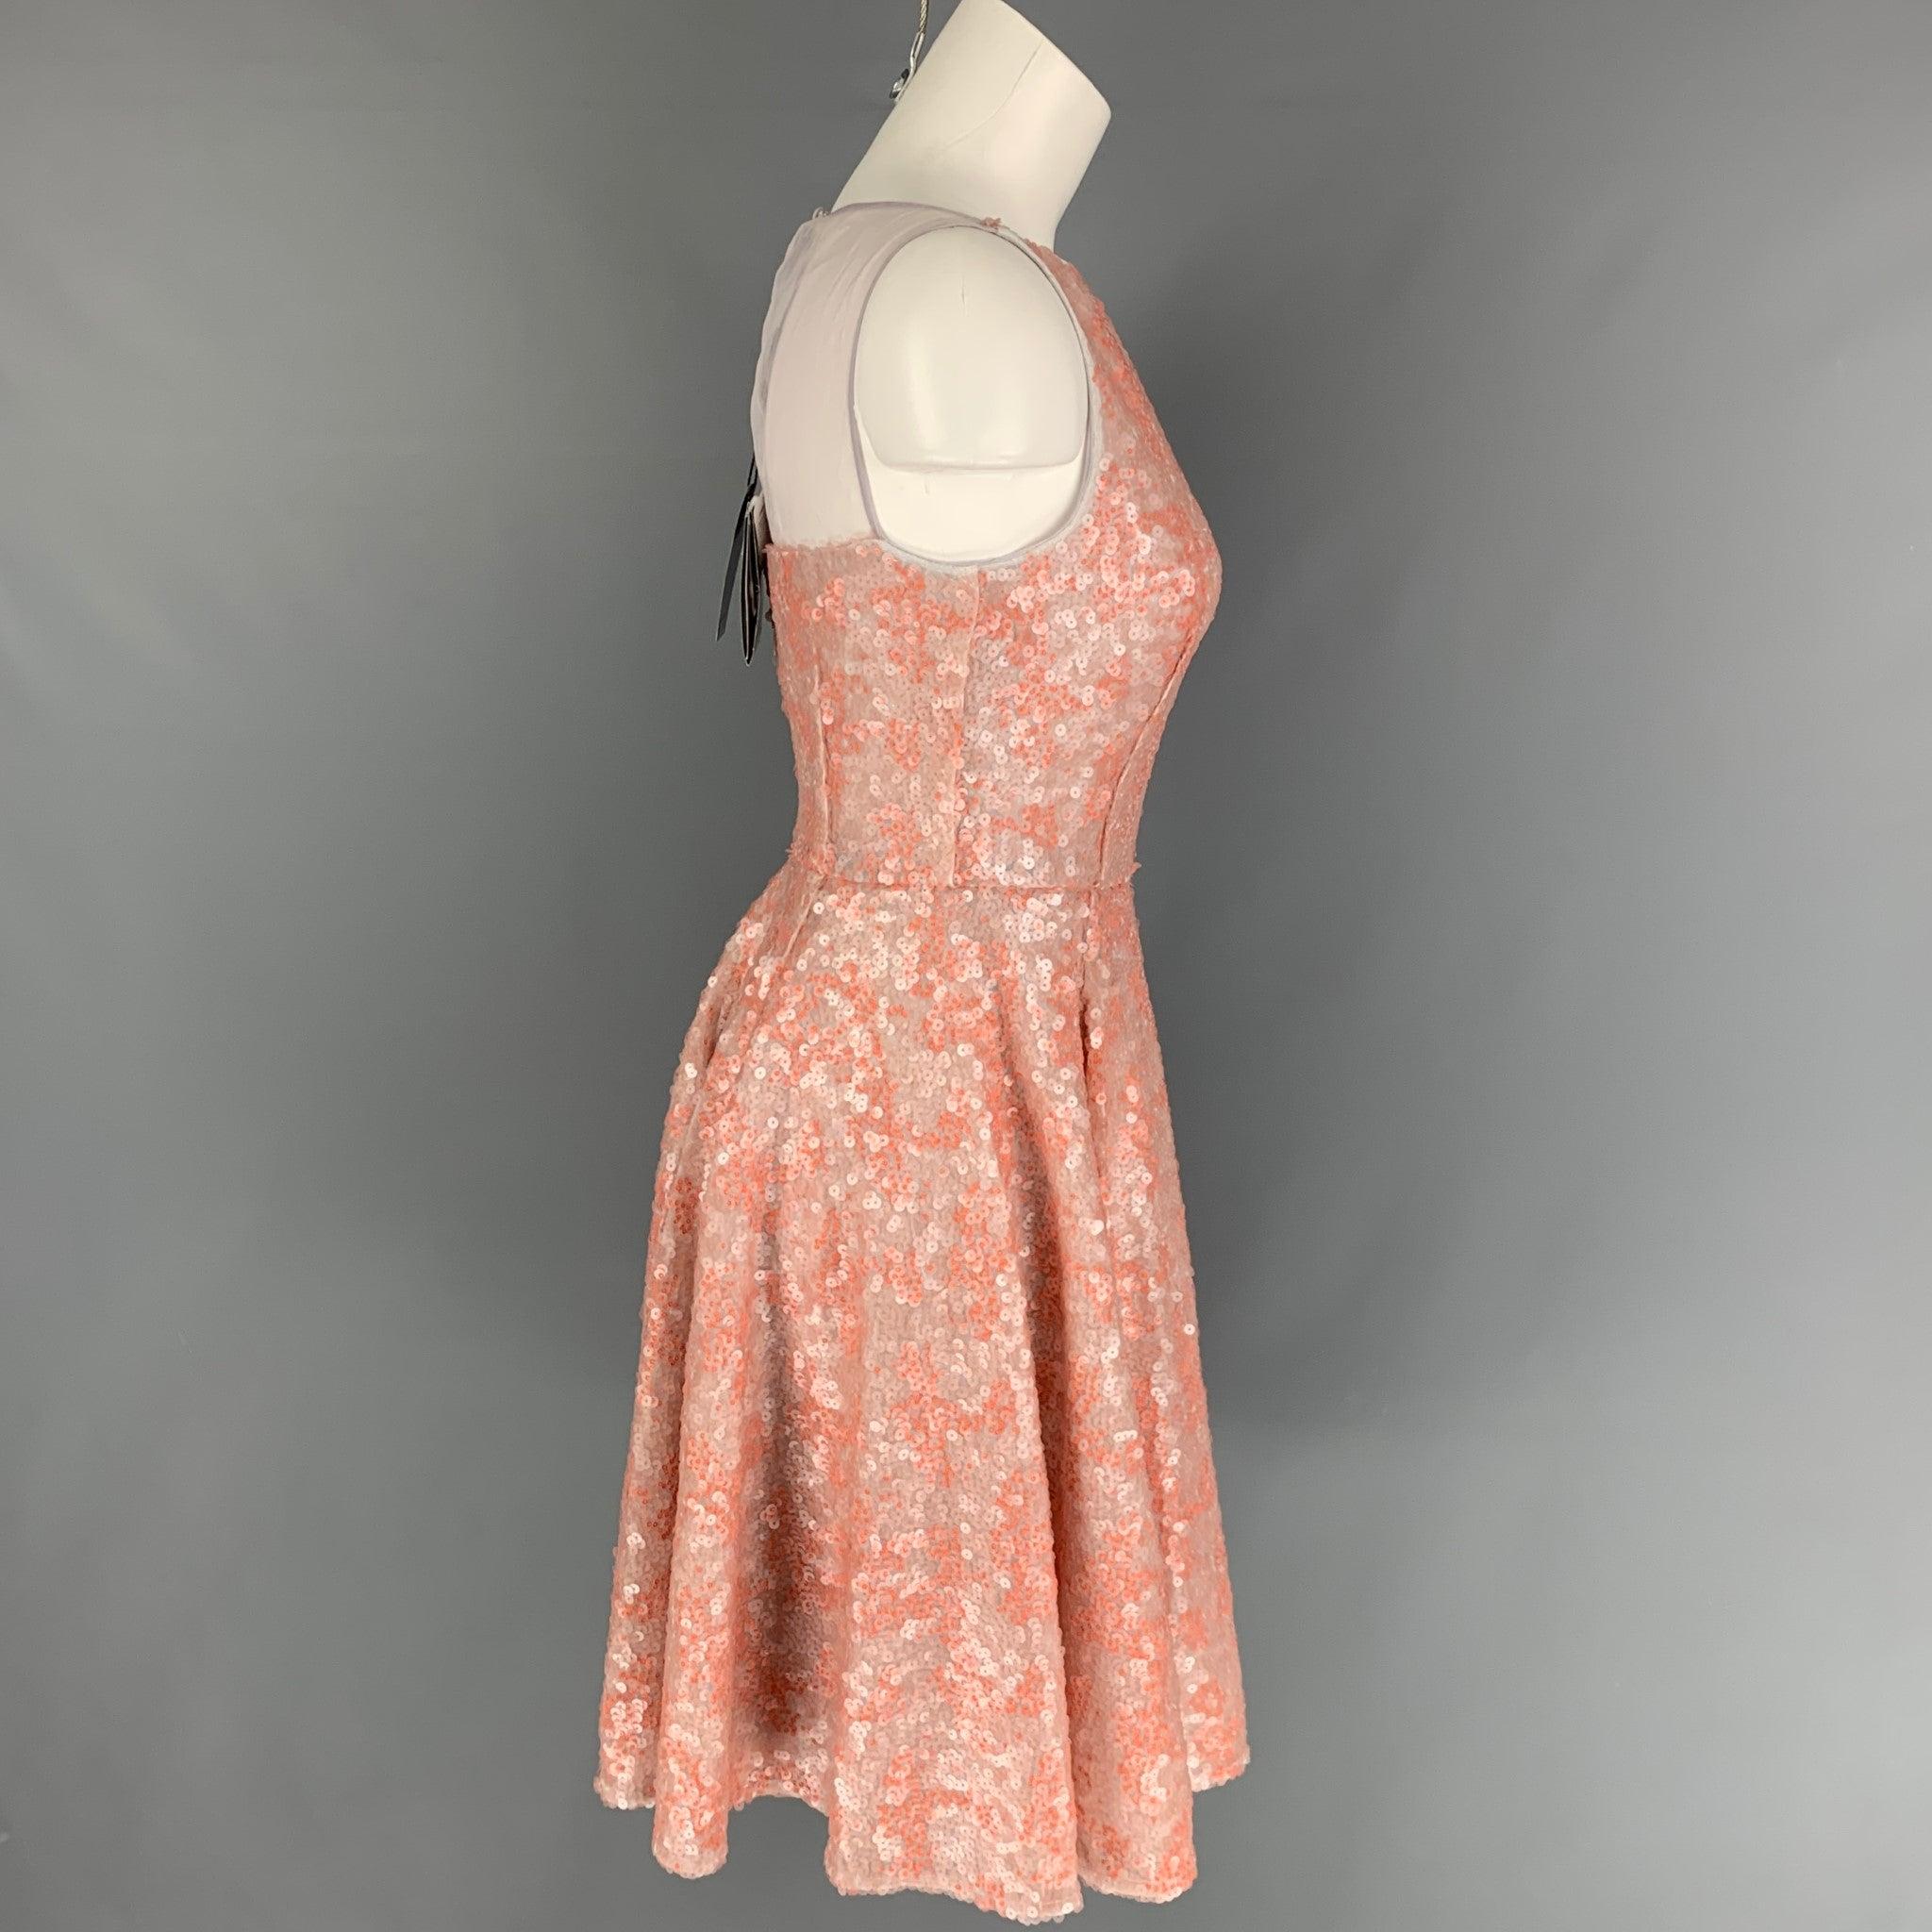 La robe EMPORIO ARMANI se compose d'un polyester à paillettes orange et d'une doublure à glissière. Elle présente un style a-line, un empiècement en dentelle dans le dos, des manches et une fermeture à glissière dans le dos.
Nouveau avec des